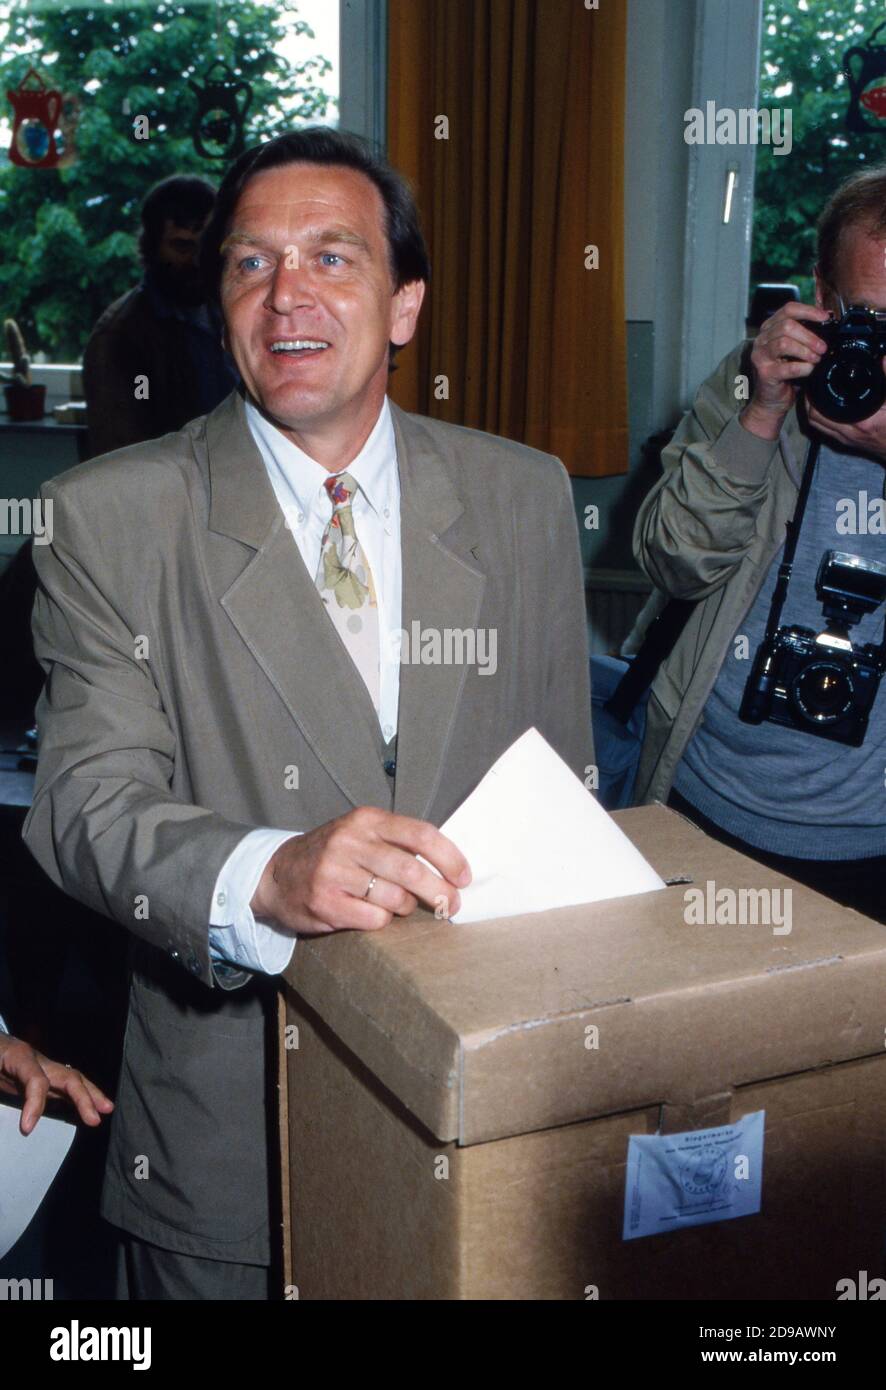 Gerhard Schröder bei der Wahl zum Niedersächsischen Landtag in Hannover am 13. Mai 1990, Deutschland 1990. Stock Photo